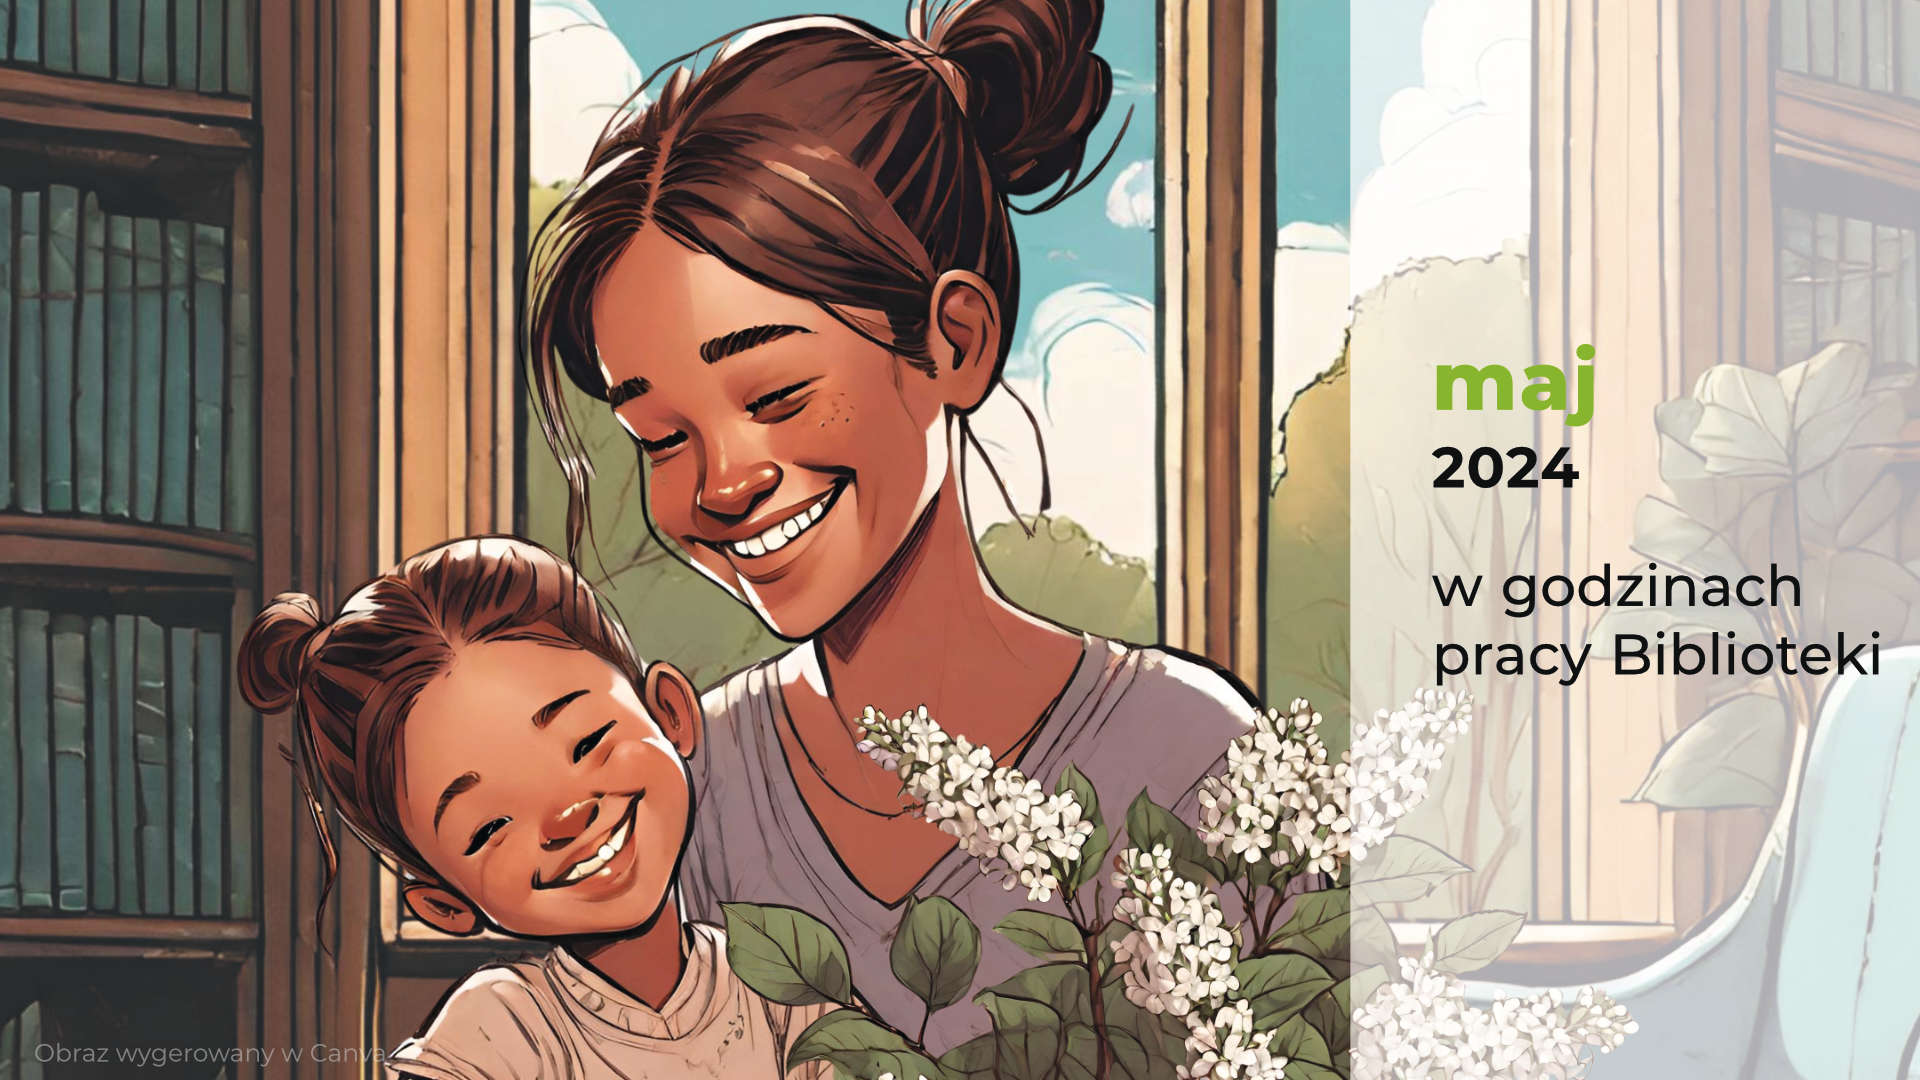 Fragment plakatu z grafiką przedstawiającą matkę z uśmiechniętym dzieckiem w bibliotece (Obraz wygenerowany w Canva)